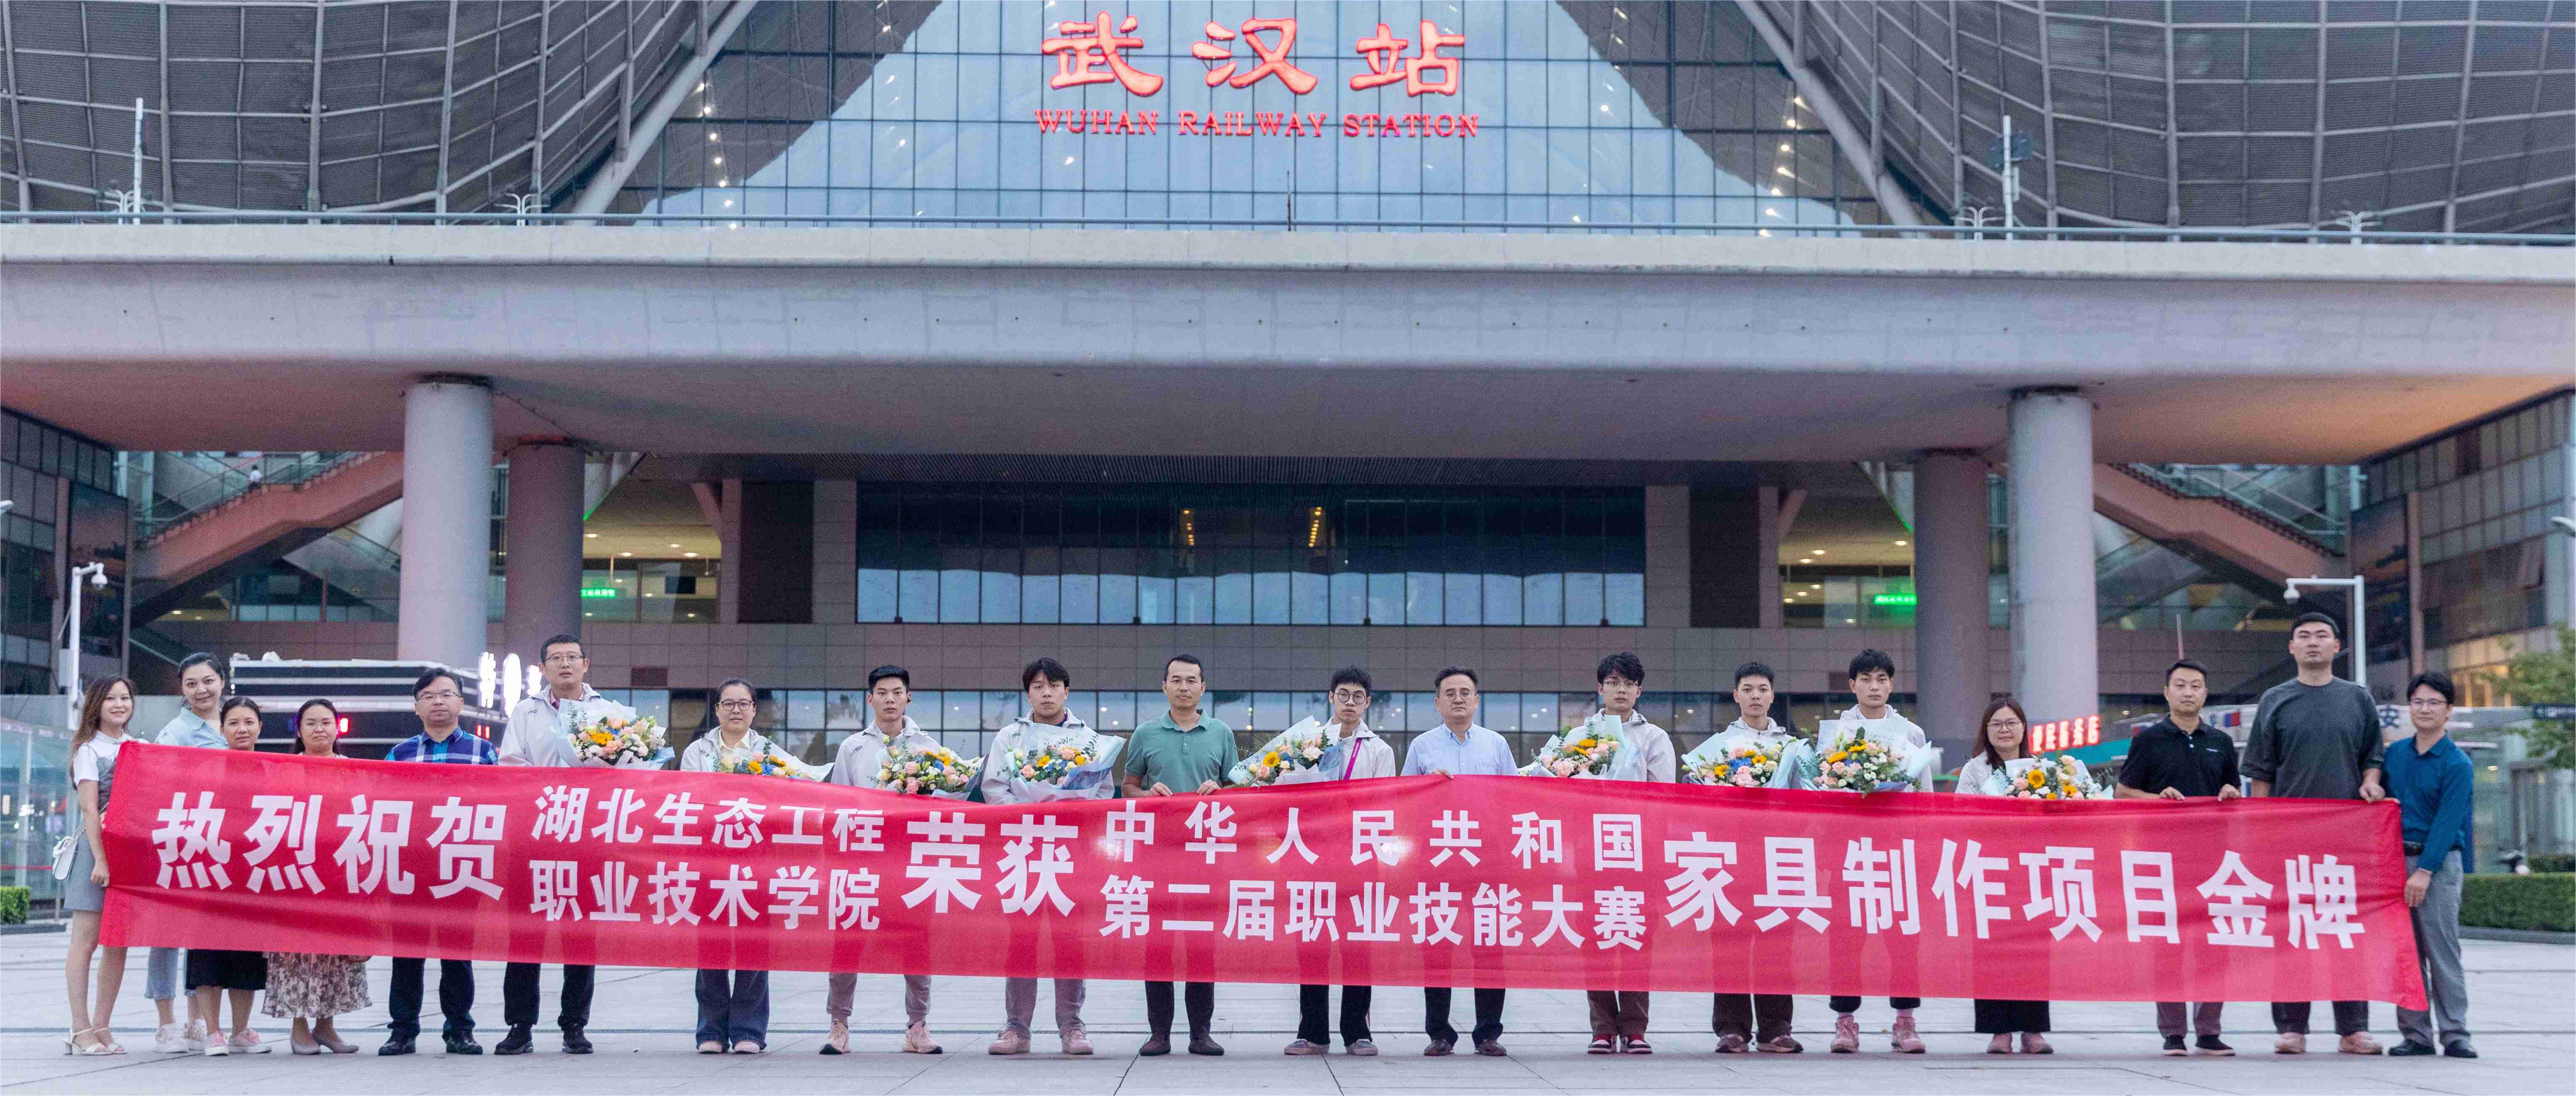 热烈欢迎中华人民共和国第二届职业技能大赛师生凯旋